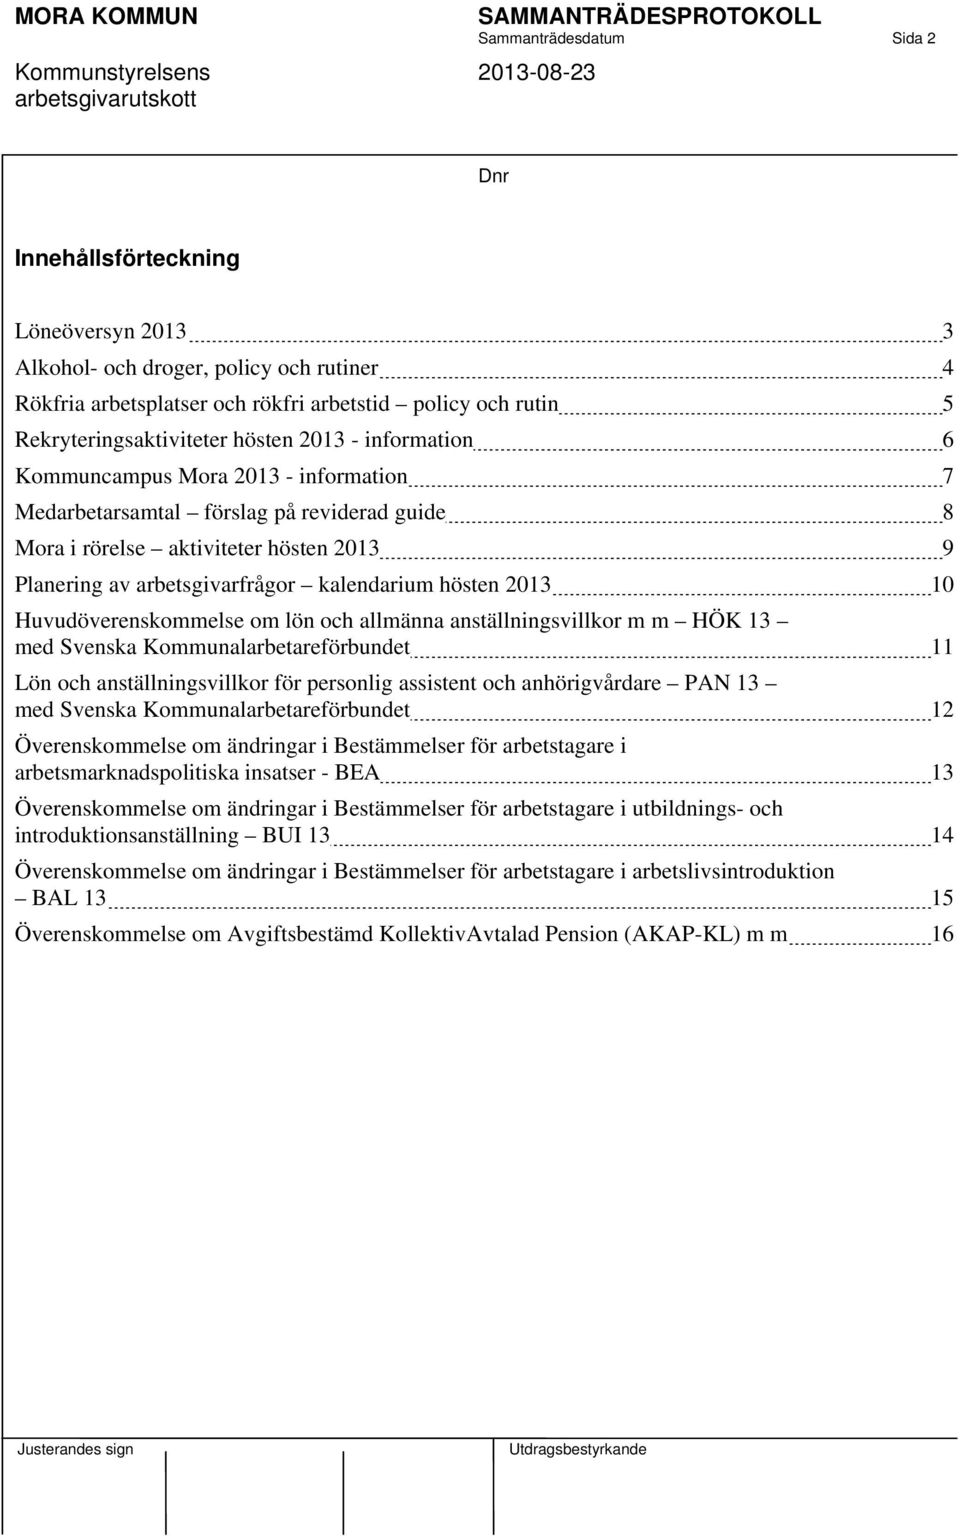 arbetsgivarfrågor kalendarium hösten 2013 10 Huvudöverenskommelse om lön och allmänna anställningsvillkor m m HÖK 13 med Svenska Kommunalarbetareförbundet 11 Lön och anställningsvillkor för personlig